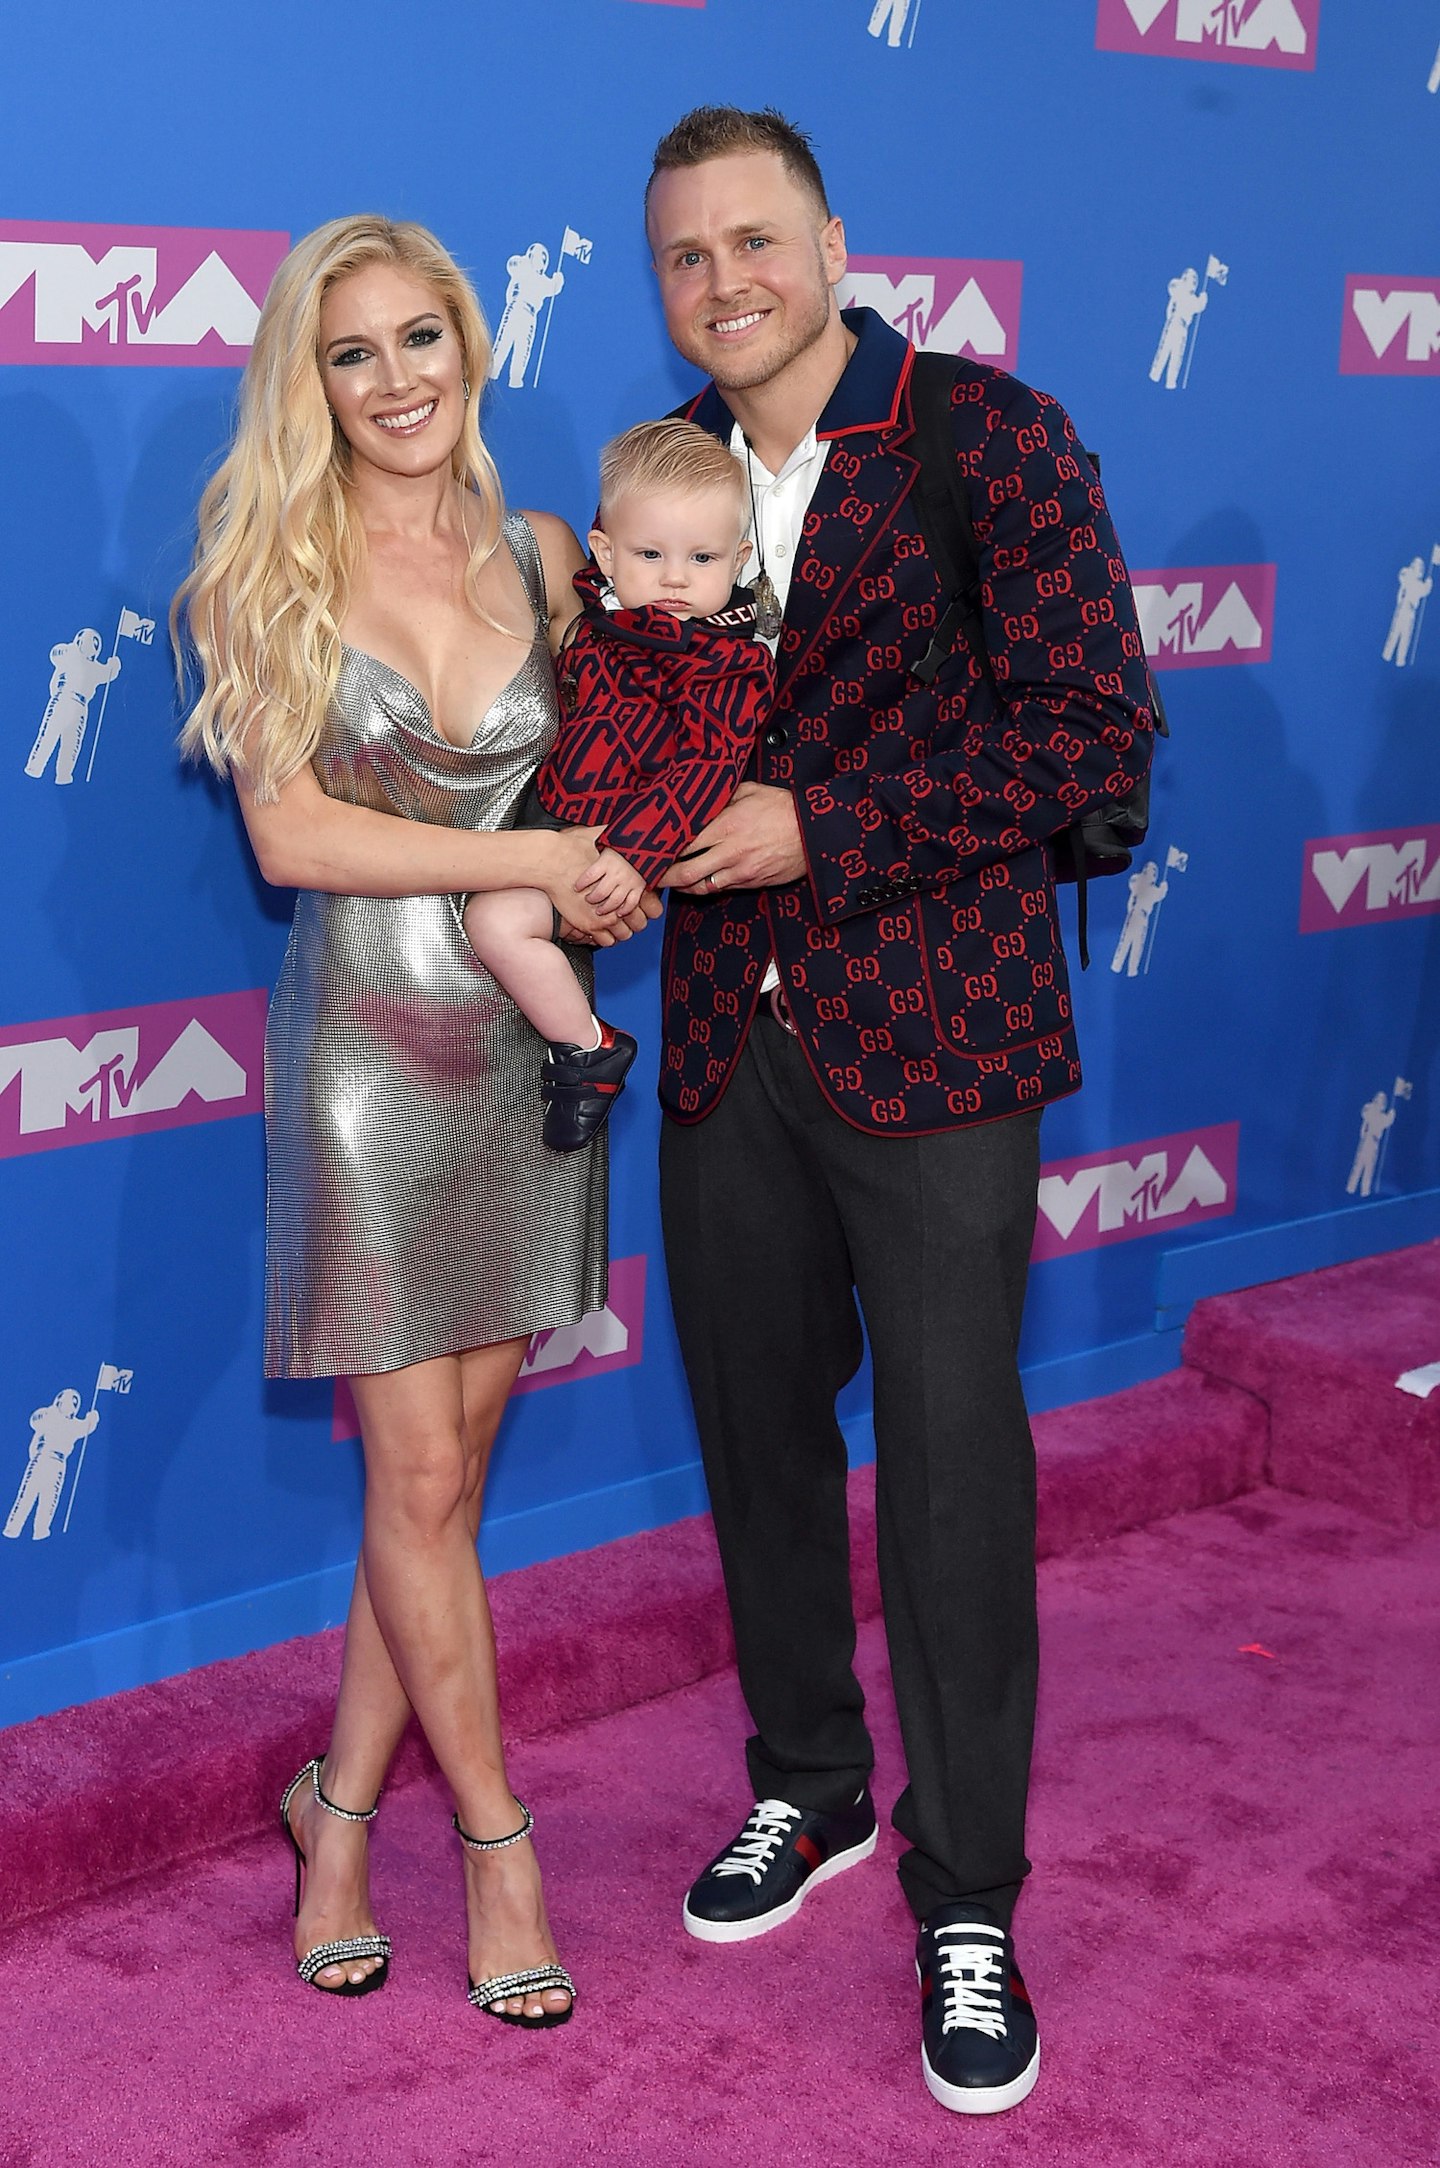 Heidi, Gunnar and Spencer Pratt attend the 2018 MTV VMAs